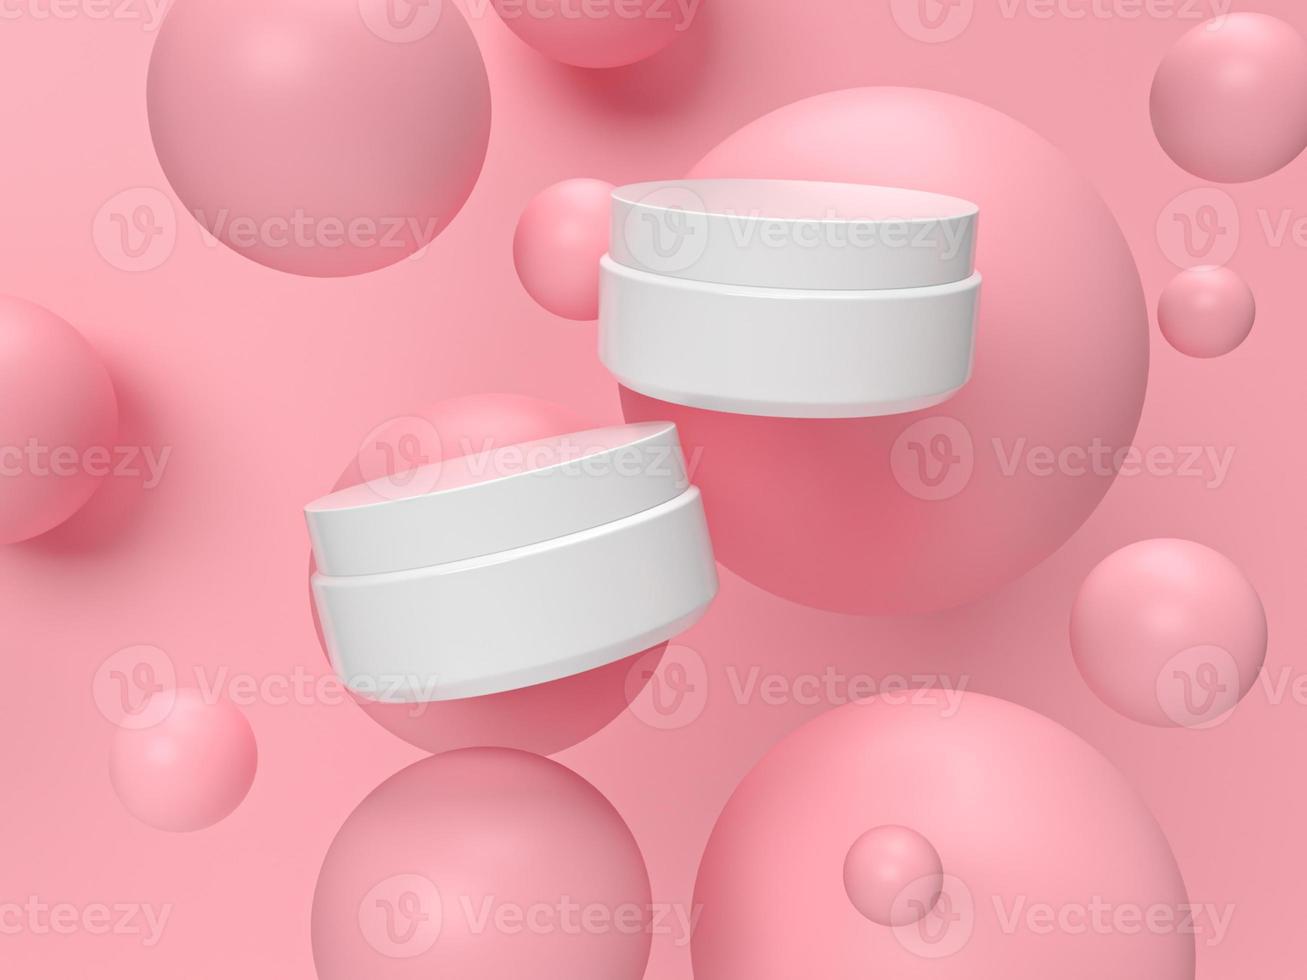 3d abstract render.beauty prodotti impostati per packaging cosmetico e skincare mockup design minimale su sfondo rosa pastello foto